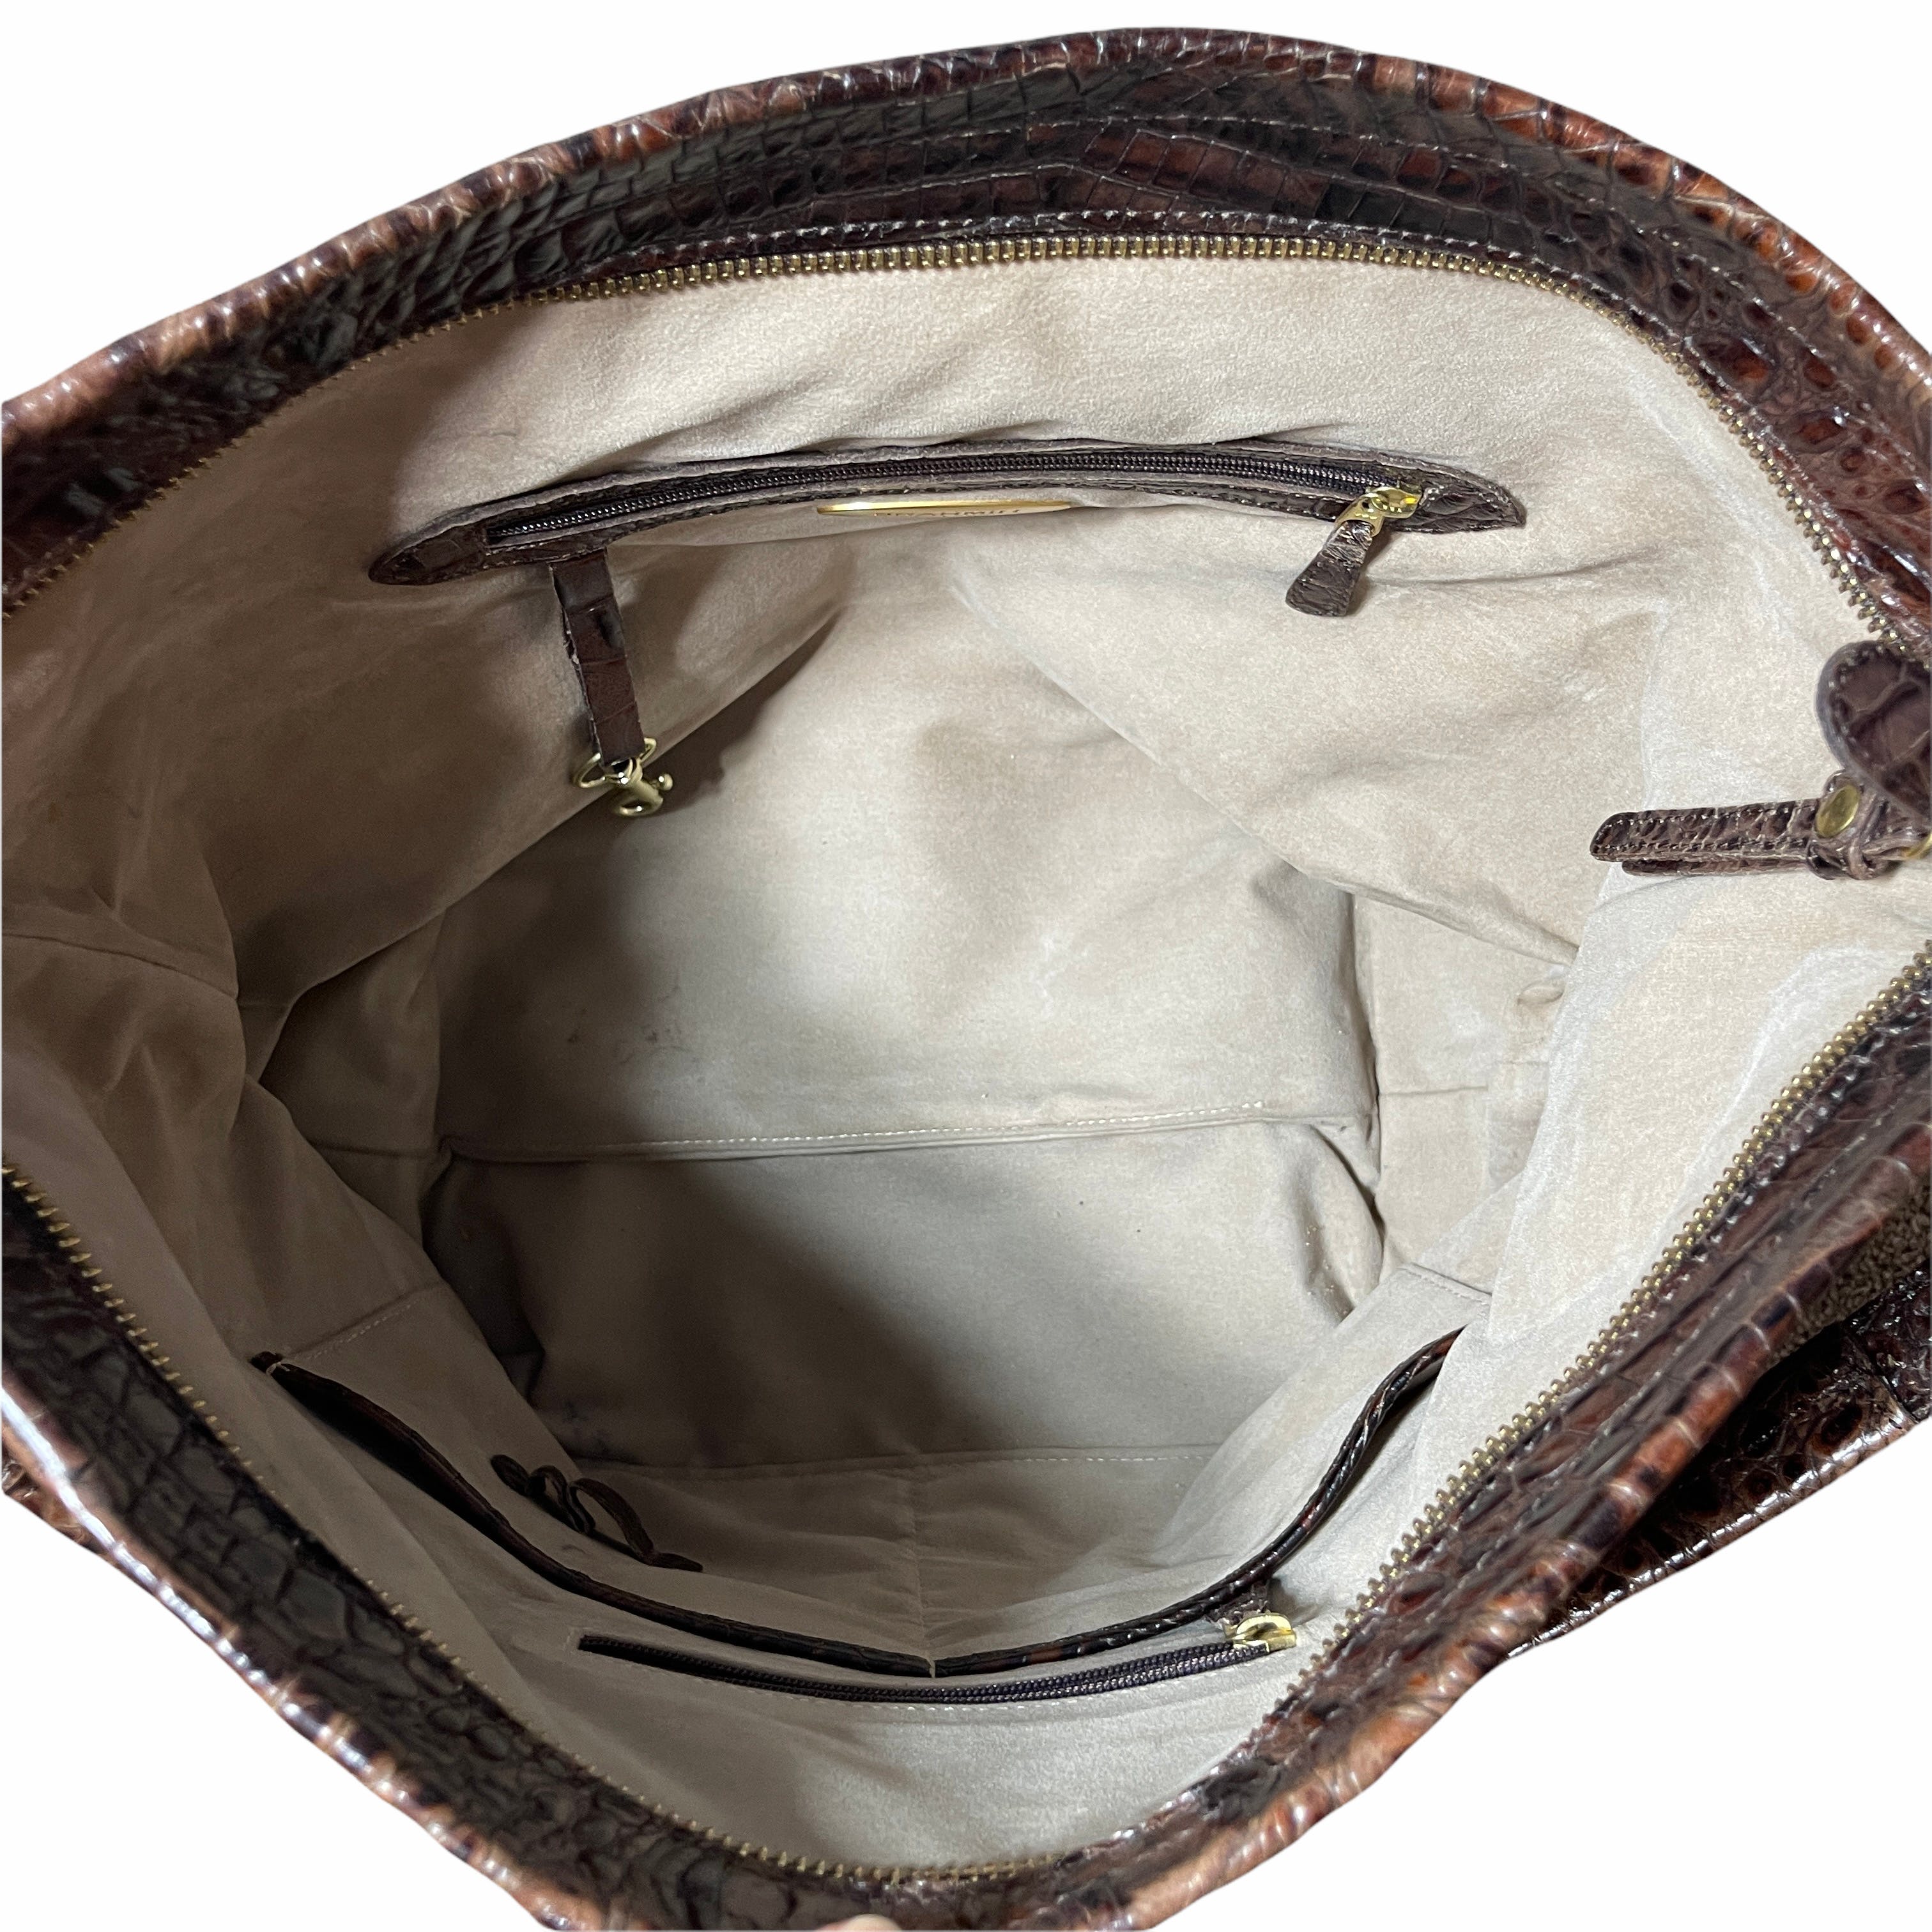 Alligator Brahmin Purse Long Bag Brown with Original Dust Bag - general for  sale - by owner - craigslist